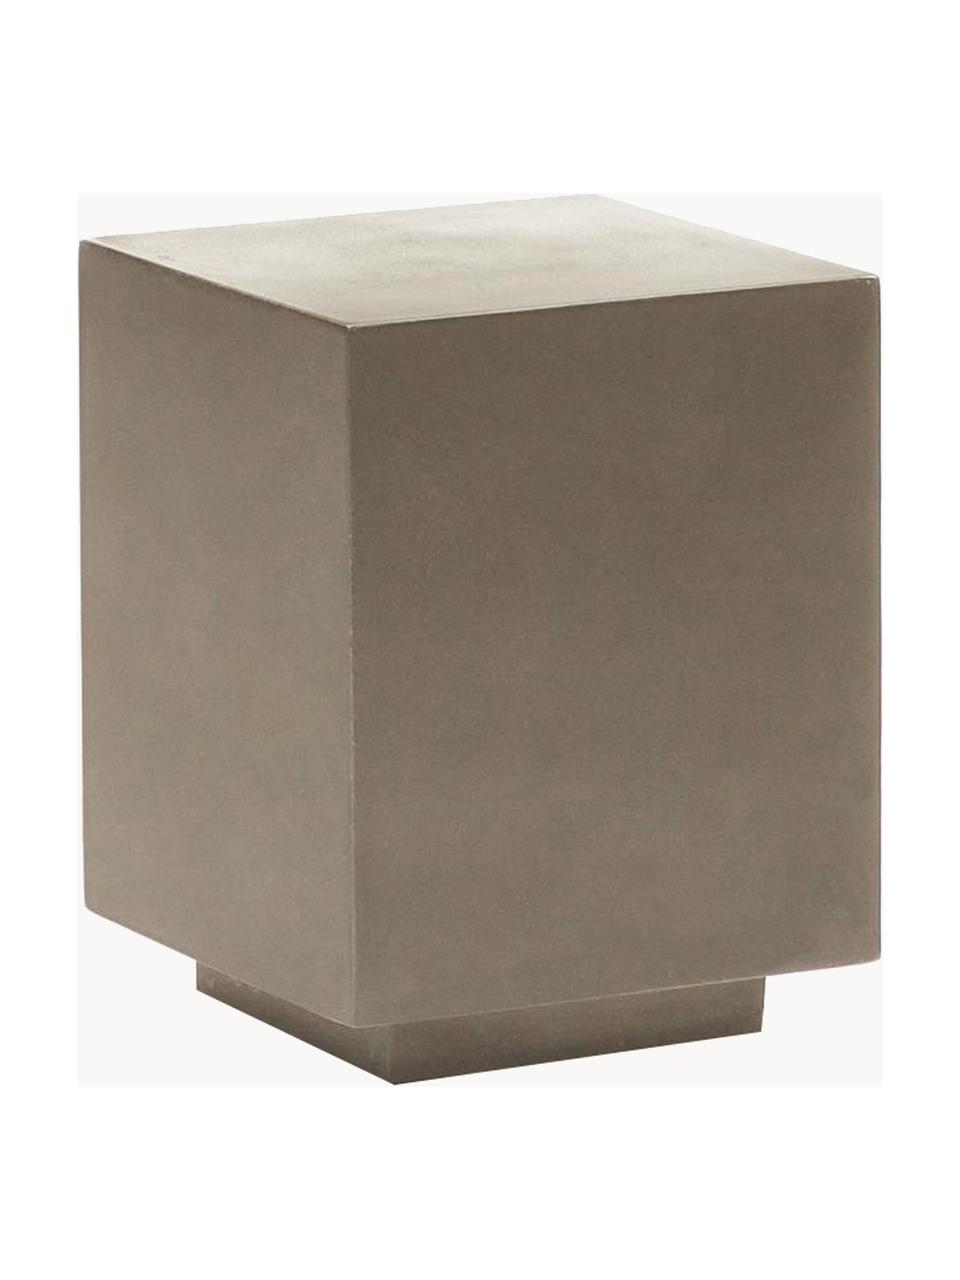 Stolik pomocniczy Rustella, 100% włókno cementowe, Greige, S 35 x W 46 cm